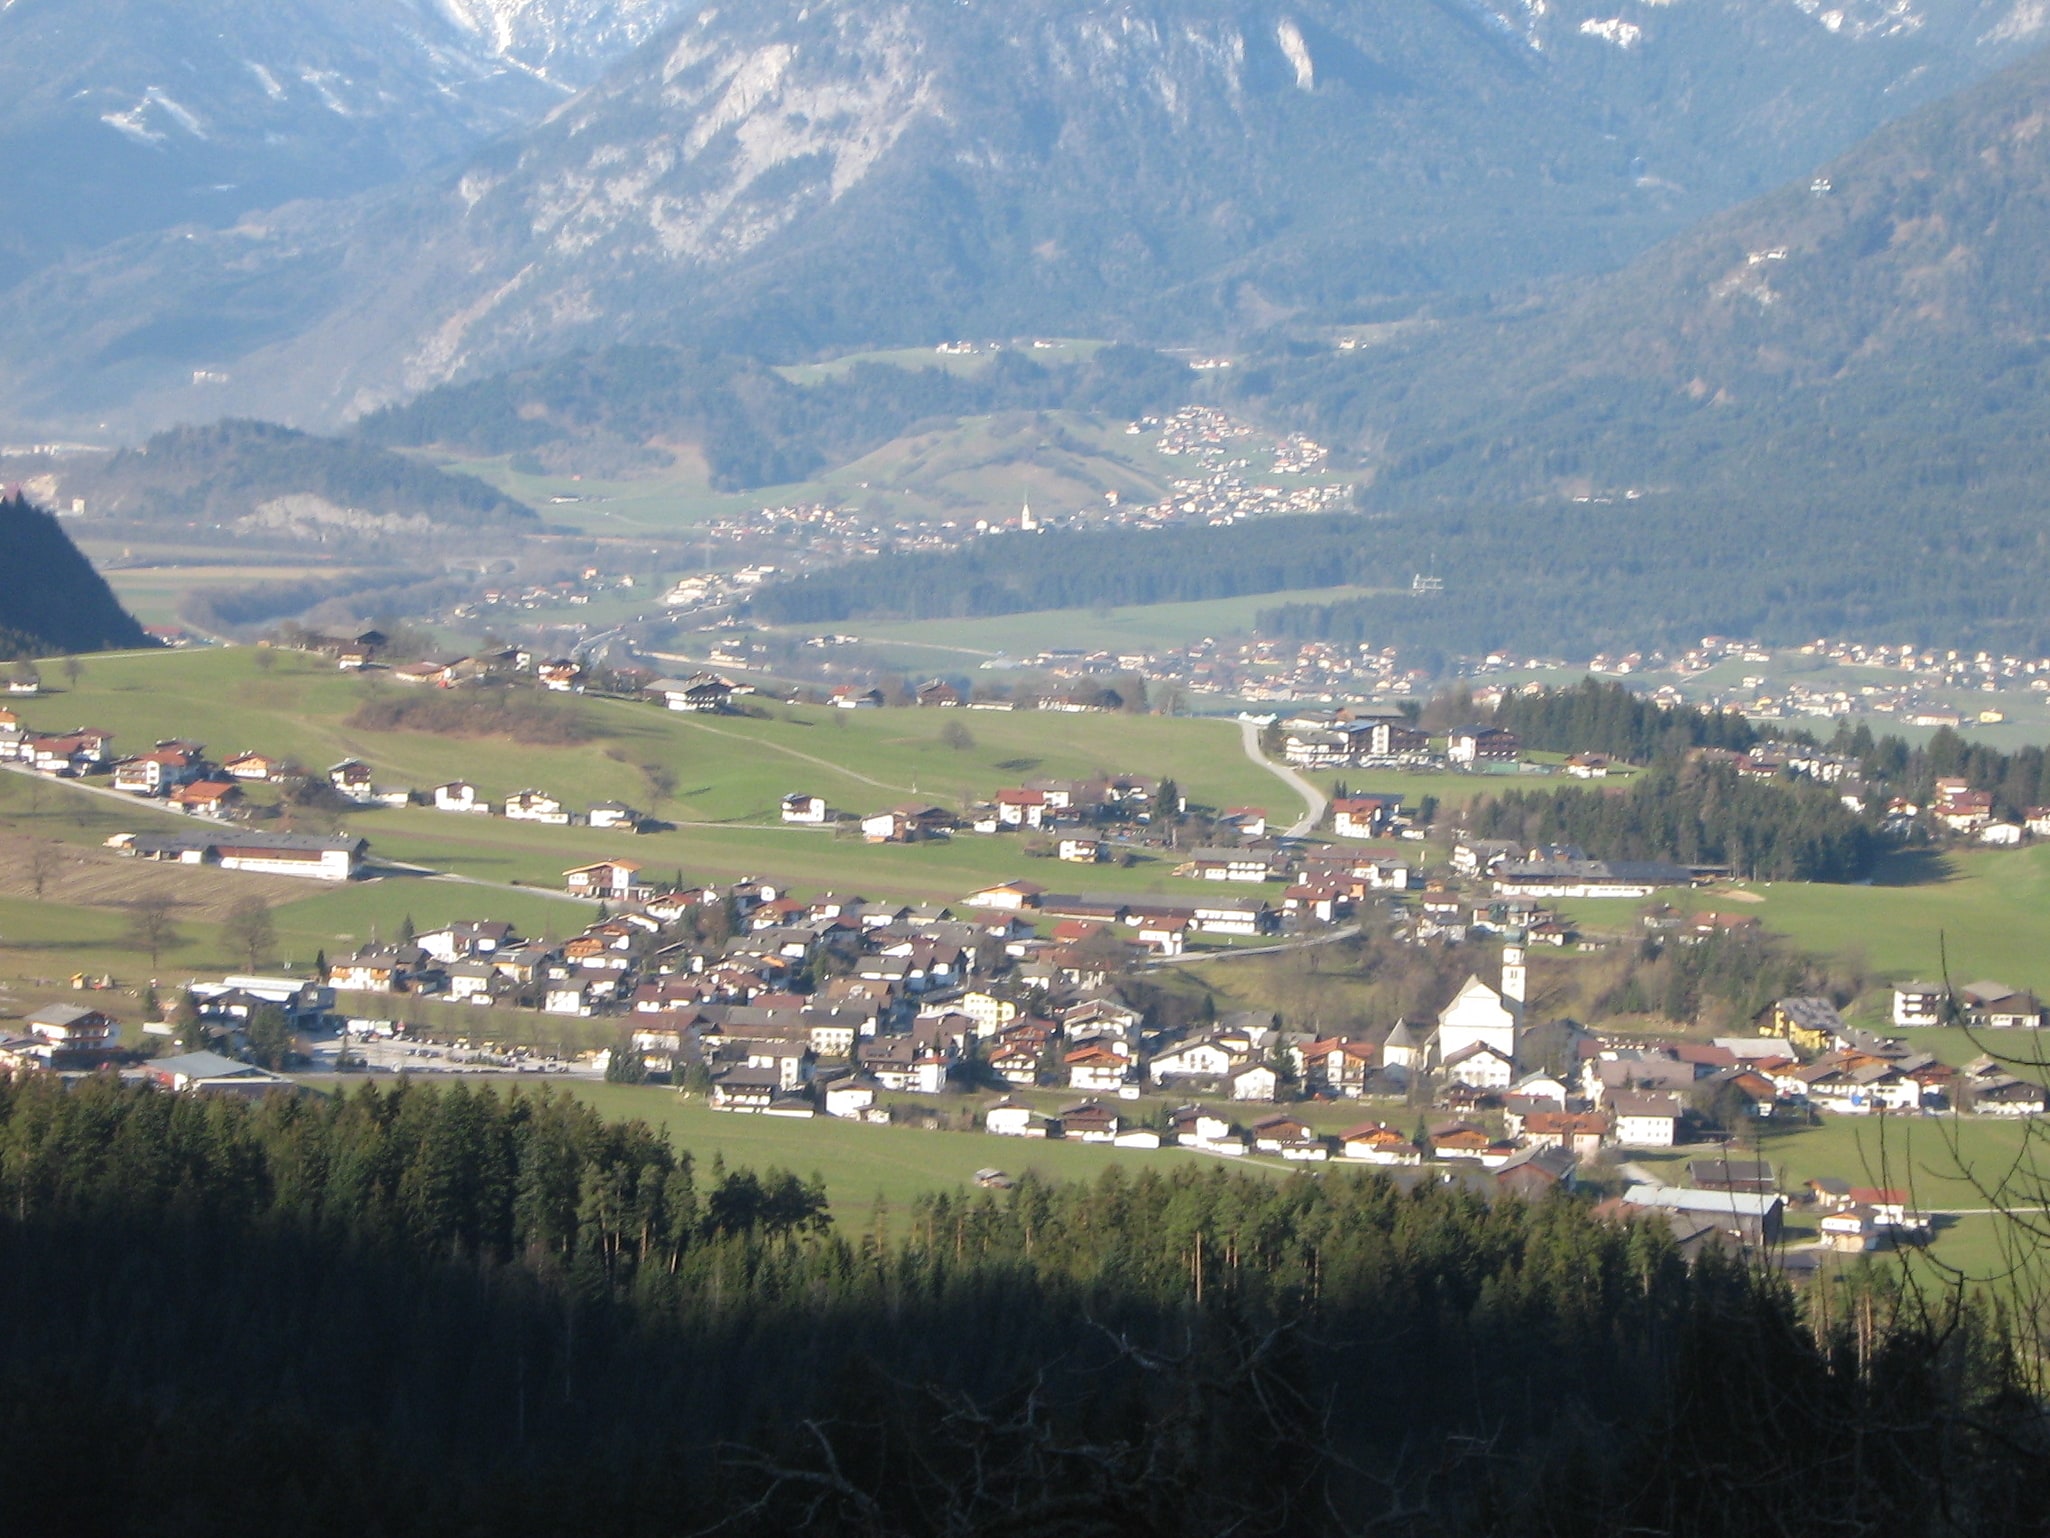 Reith im Alpbachtal, Austria